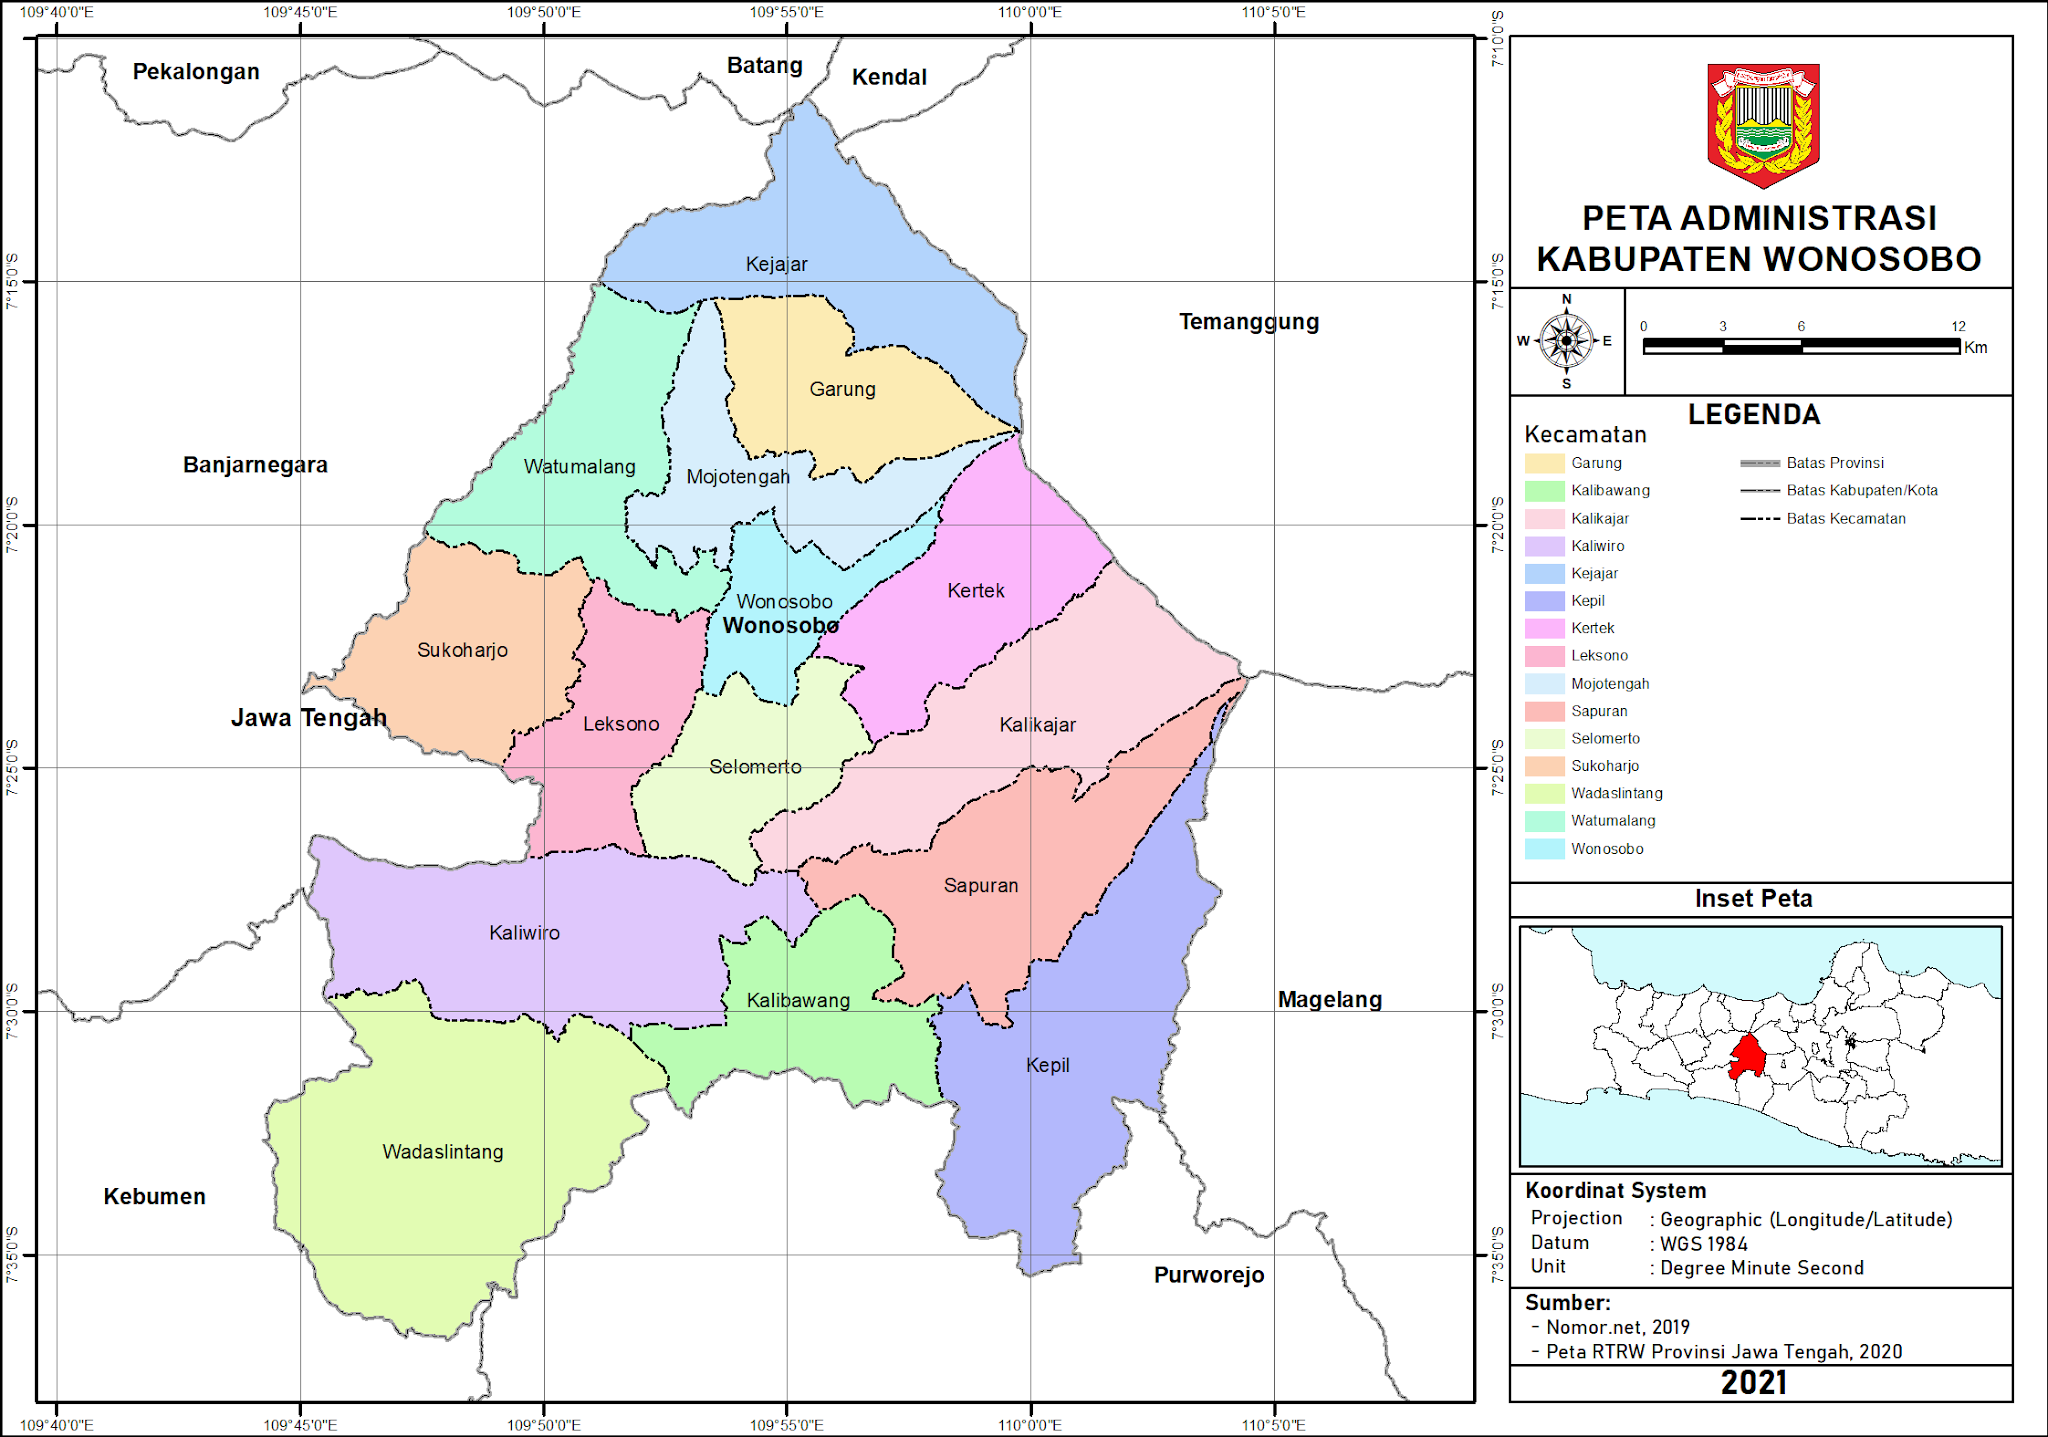 Peta Administrasi Kabupaten Wonosobo